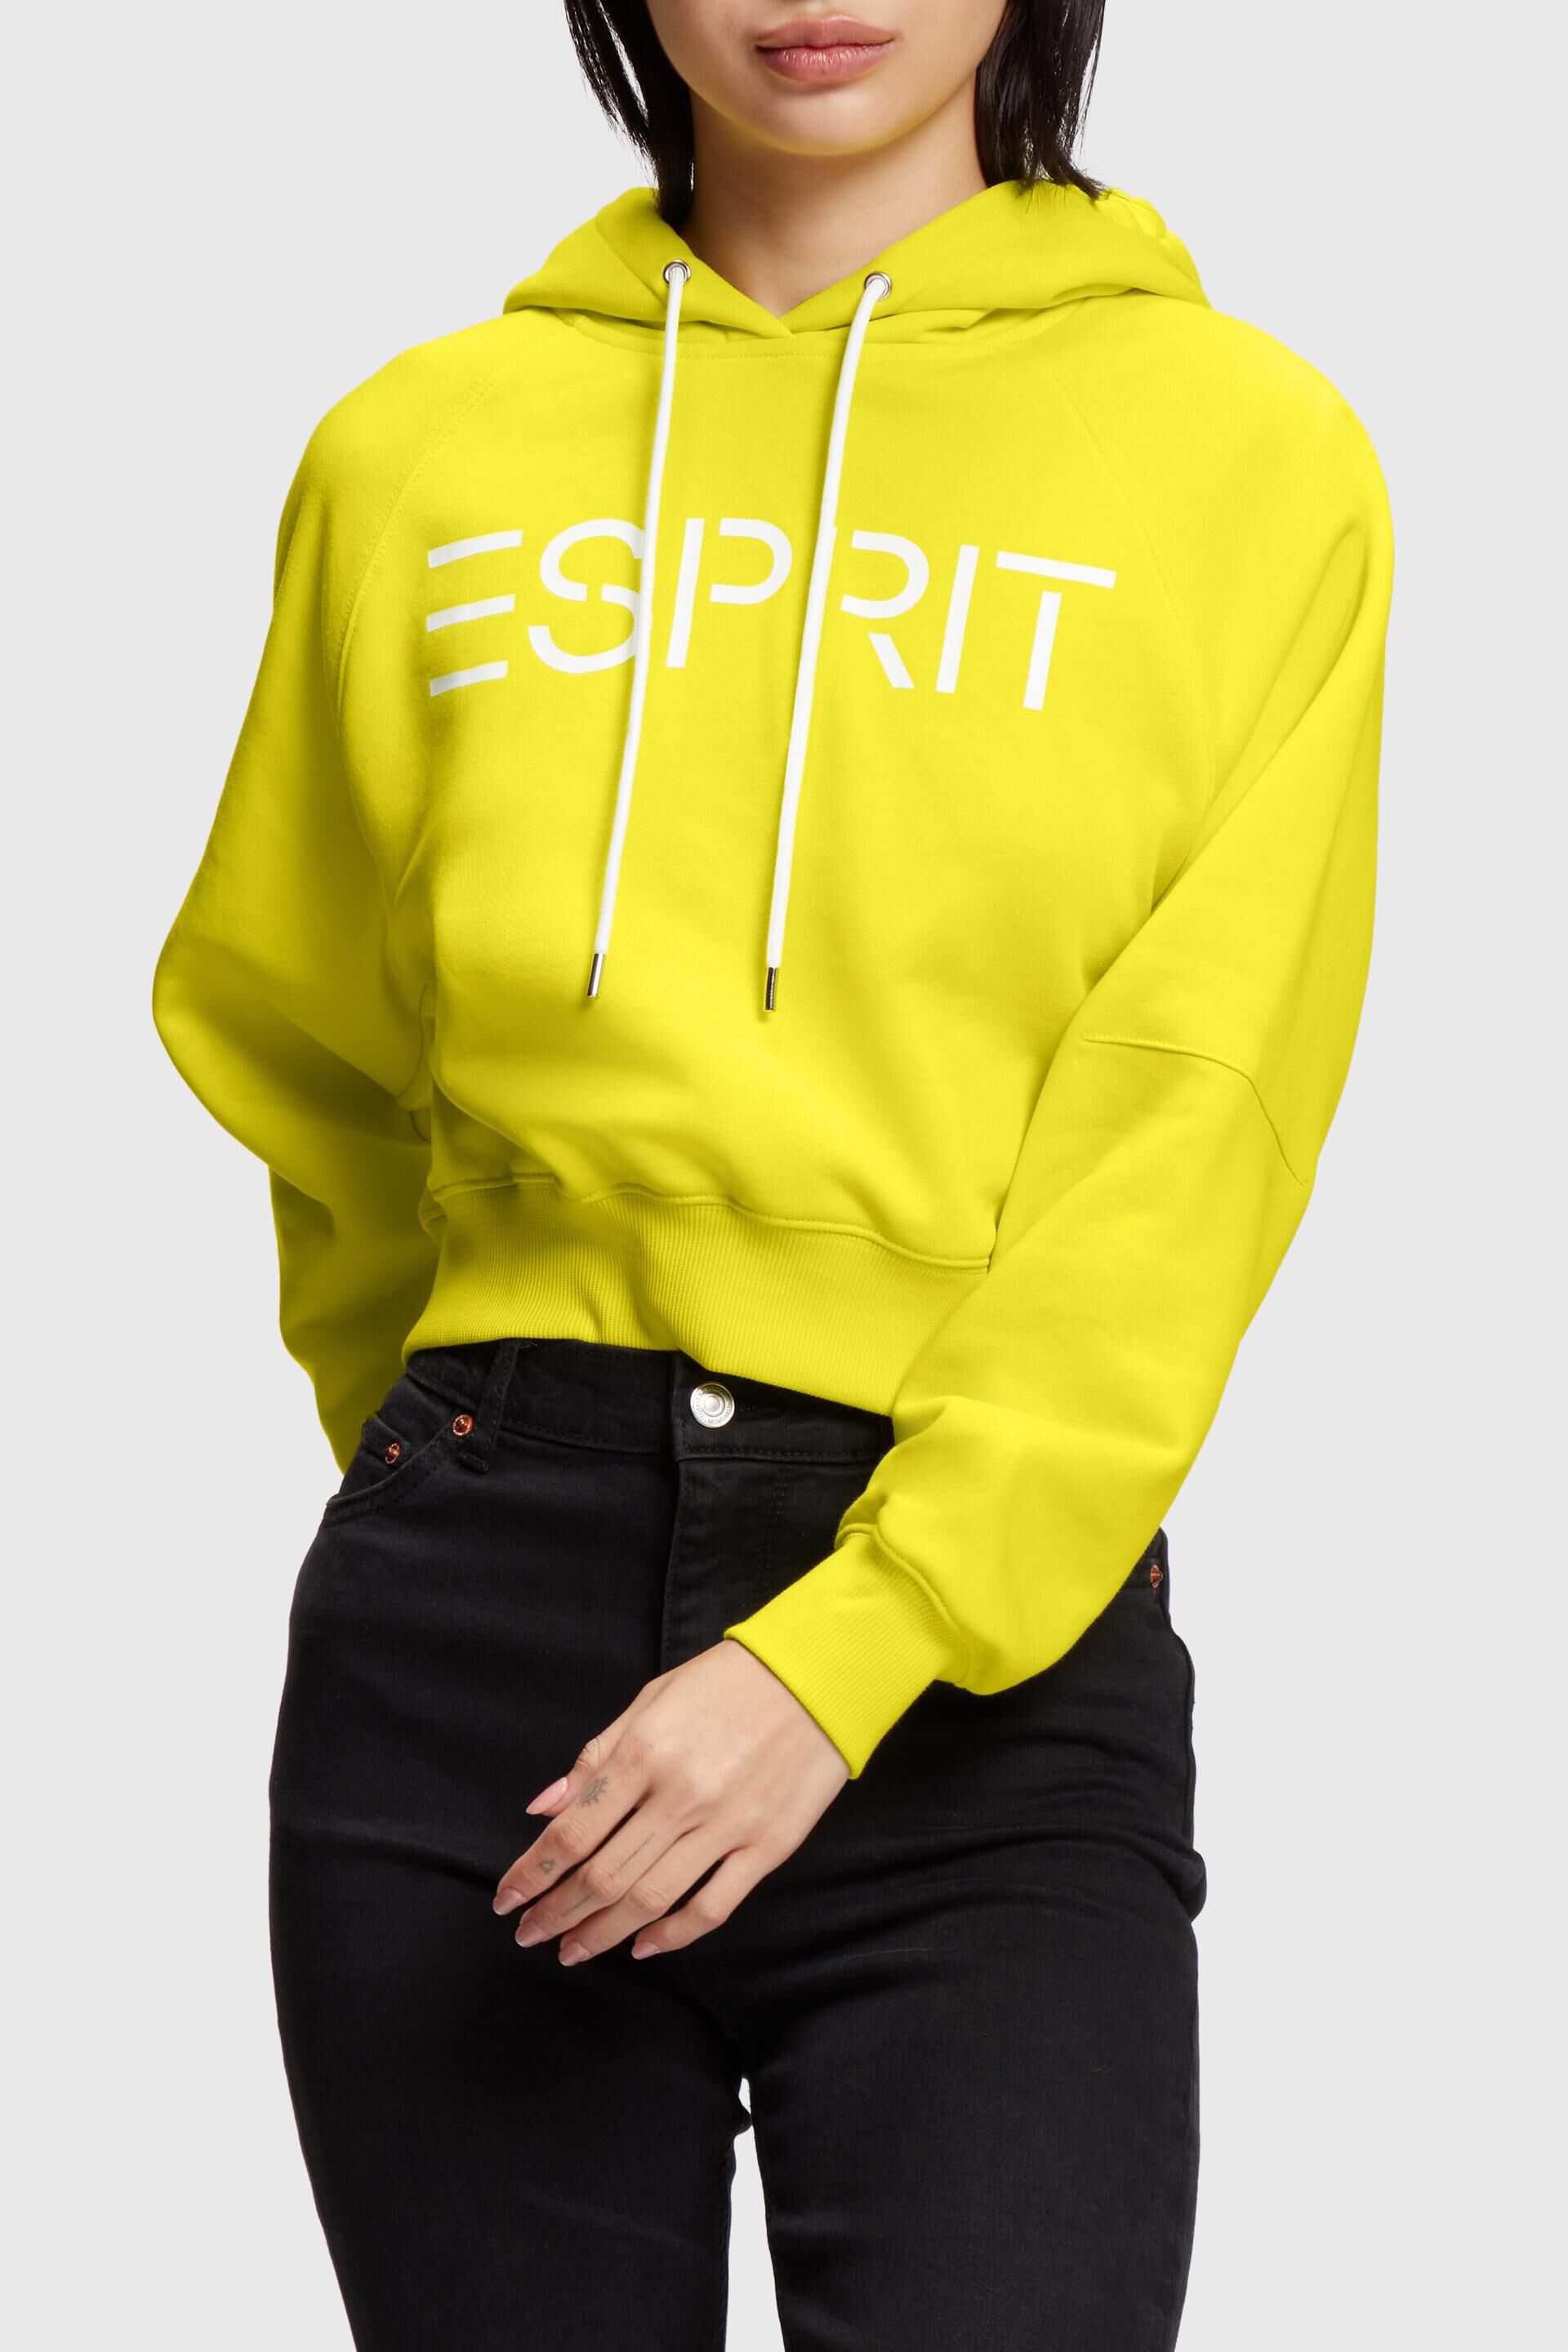 Esprit logo Cropped hoodie